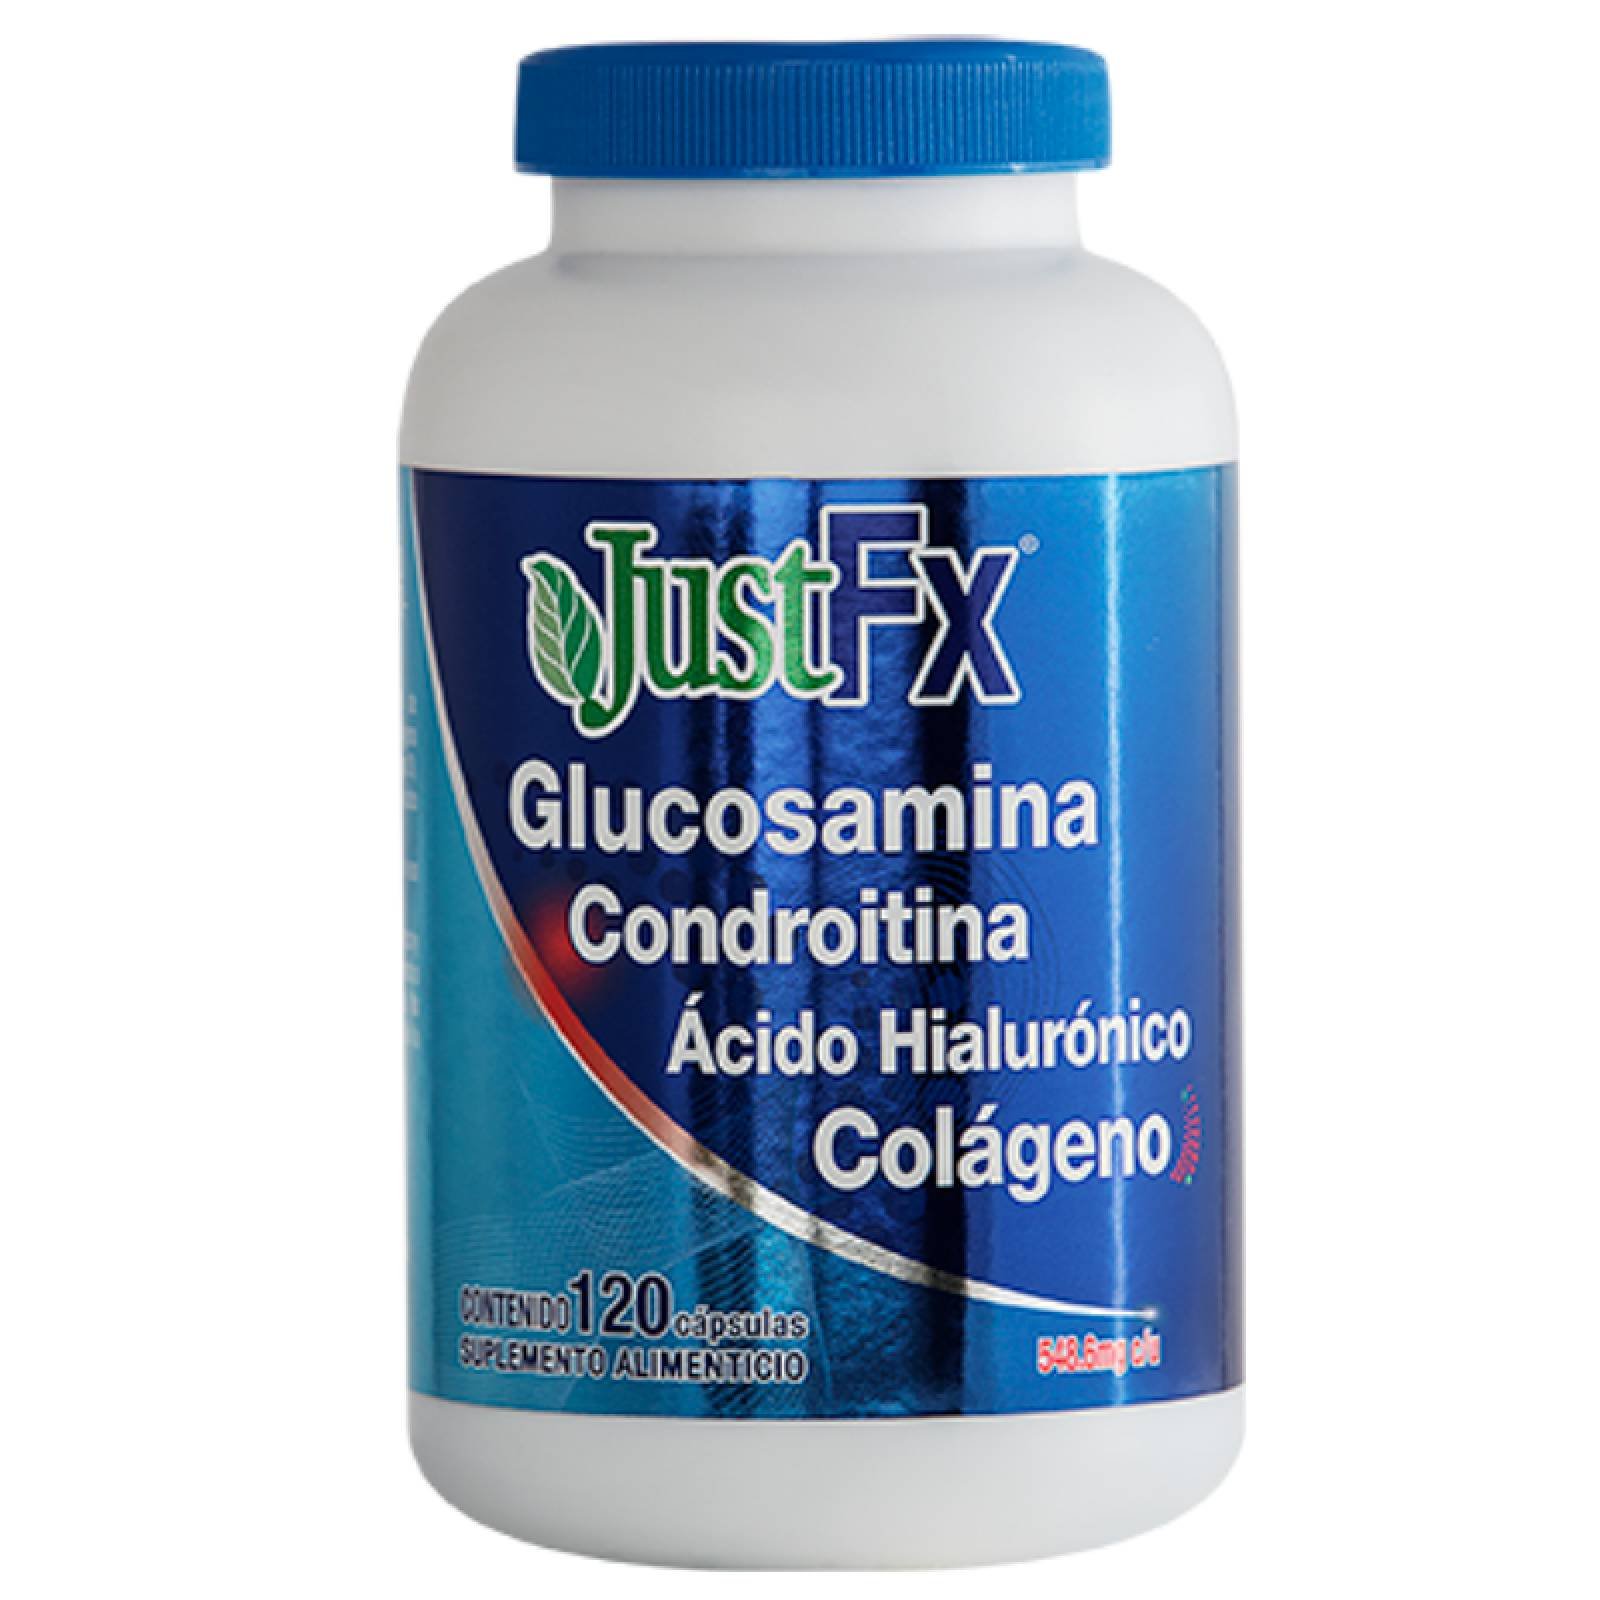 JustFX Glucosamina Condroitina Ácido Hialurónico Colágeno Olnatura Con 120 Cápsulas